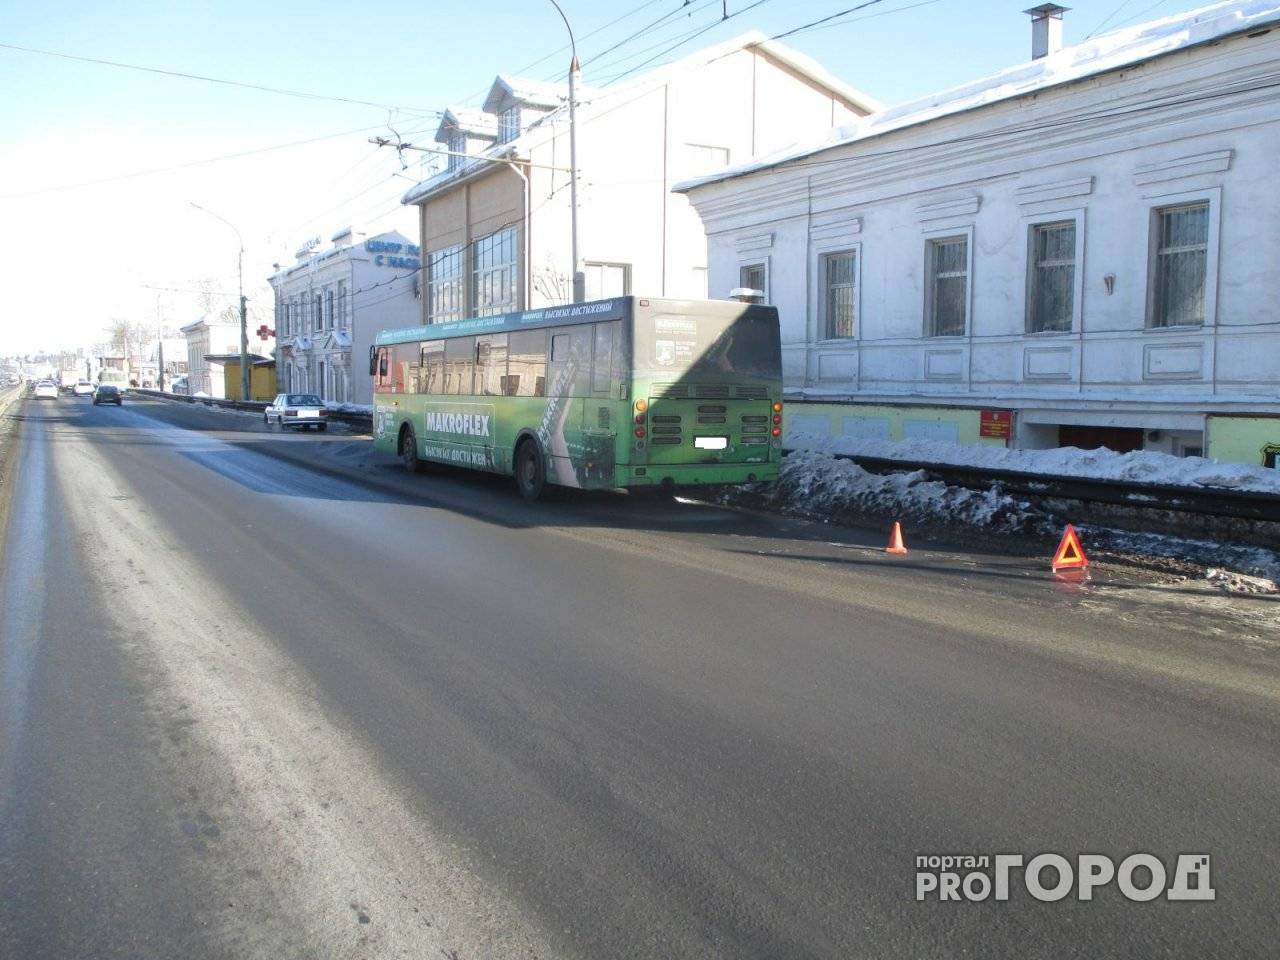 Очередная жертва ярославских маршруток: пассажир упал и получил травмы